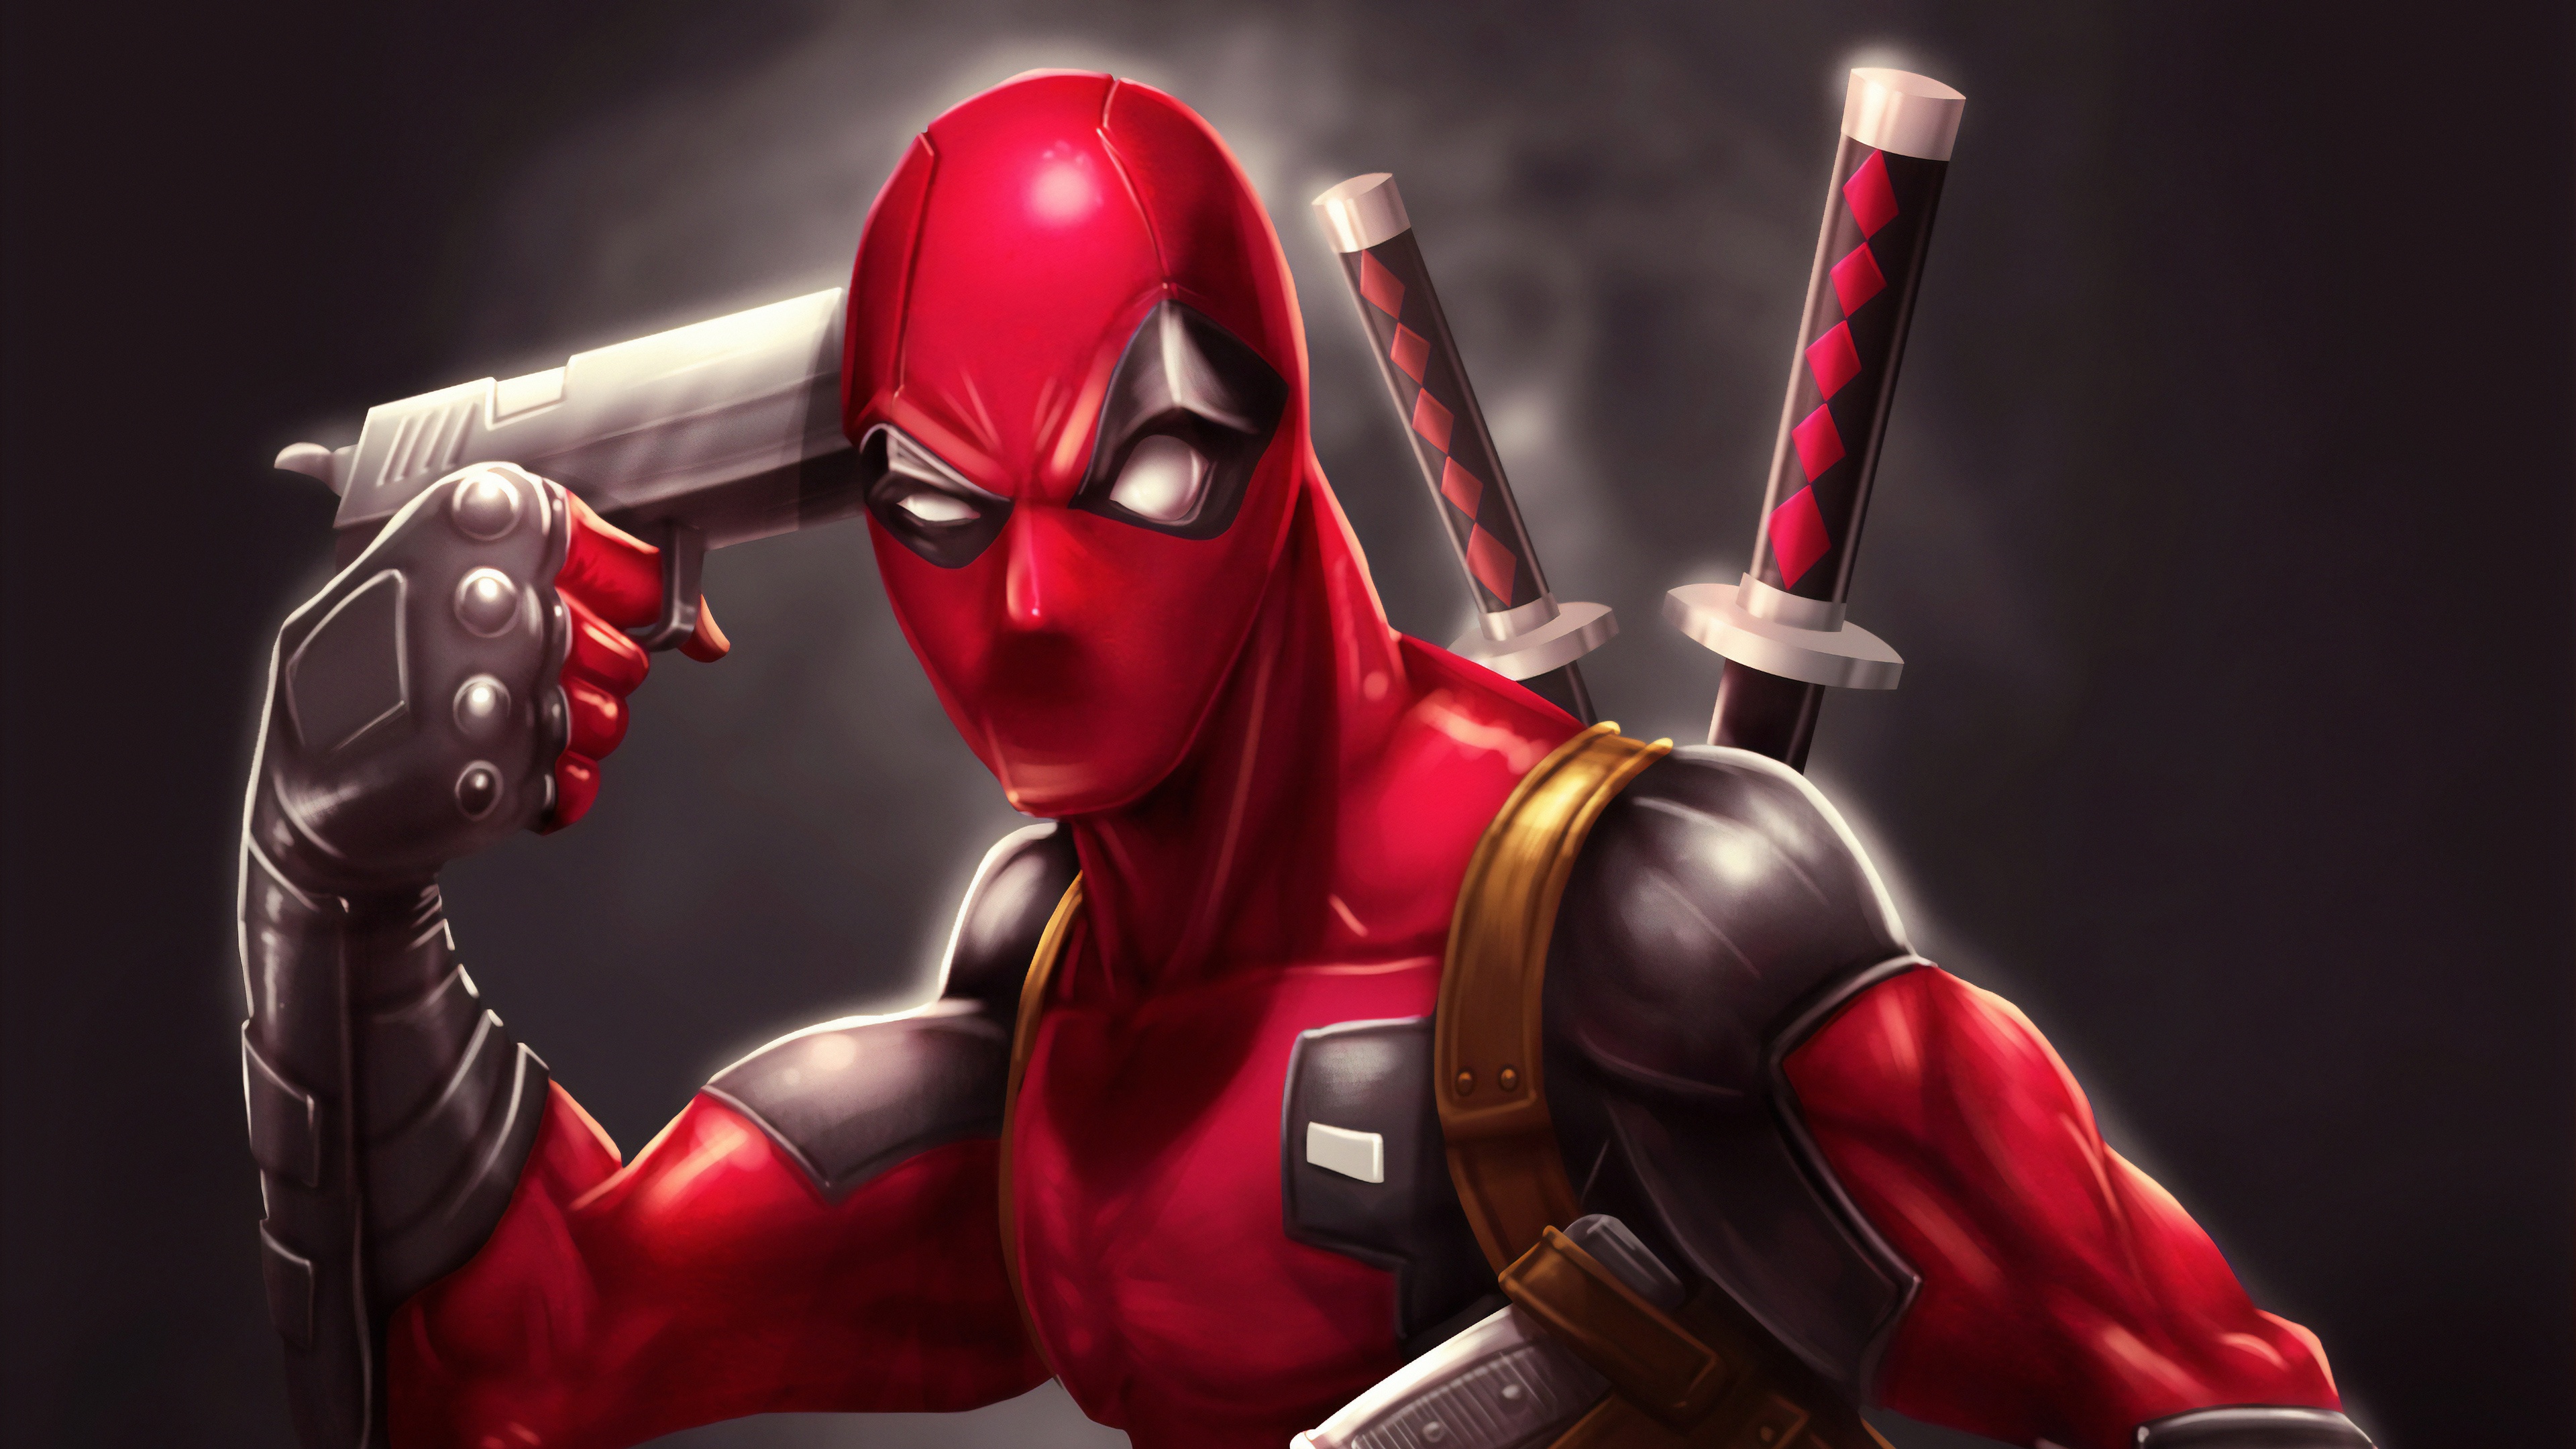  Deadpool  4k Ultra HD Wallpaper  Background Image 